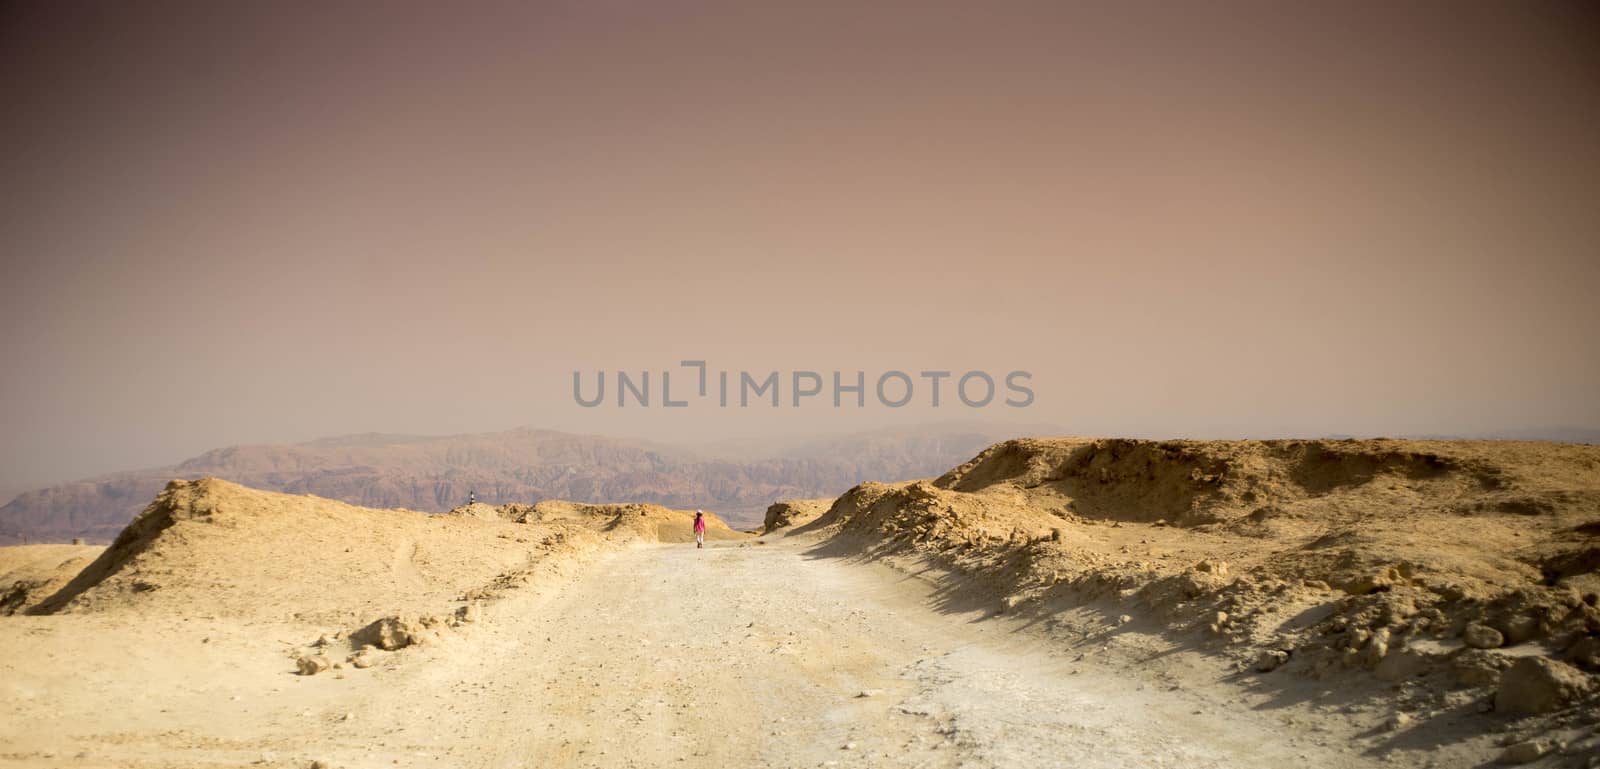 Travel near dead sea in judean desert of Israel